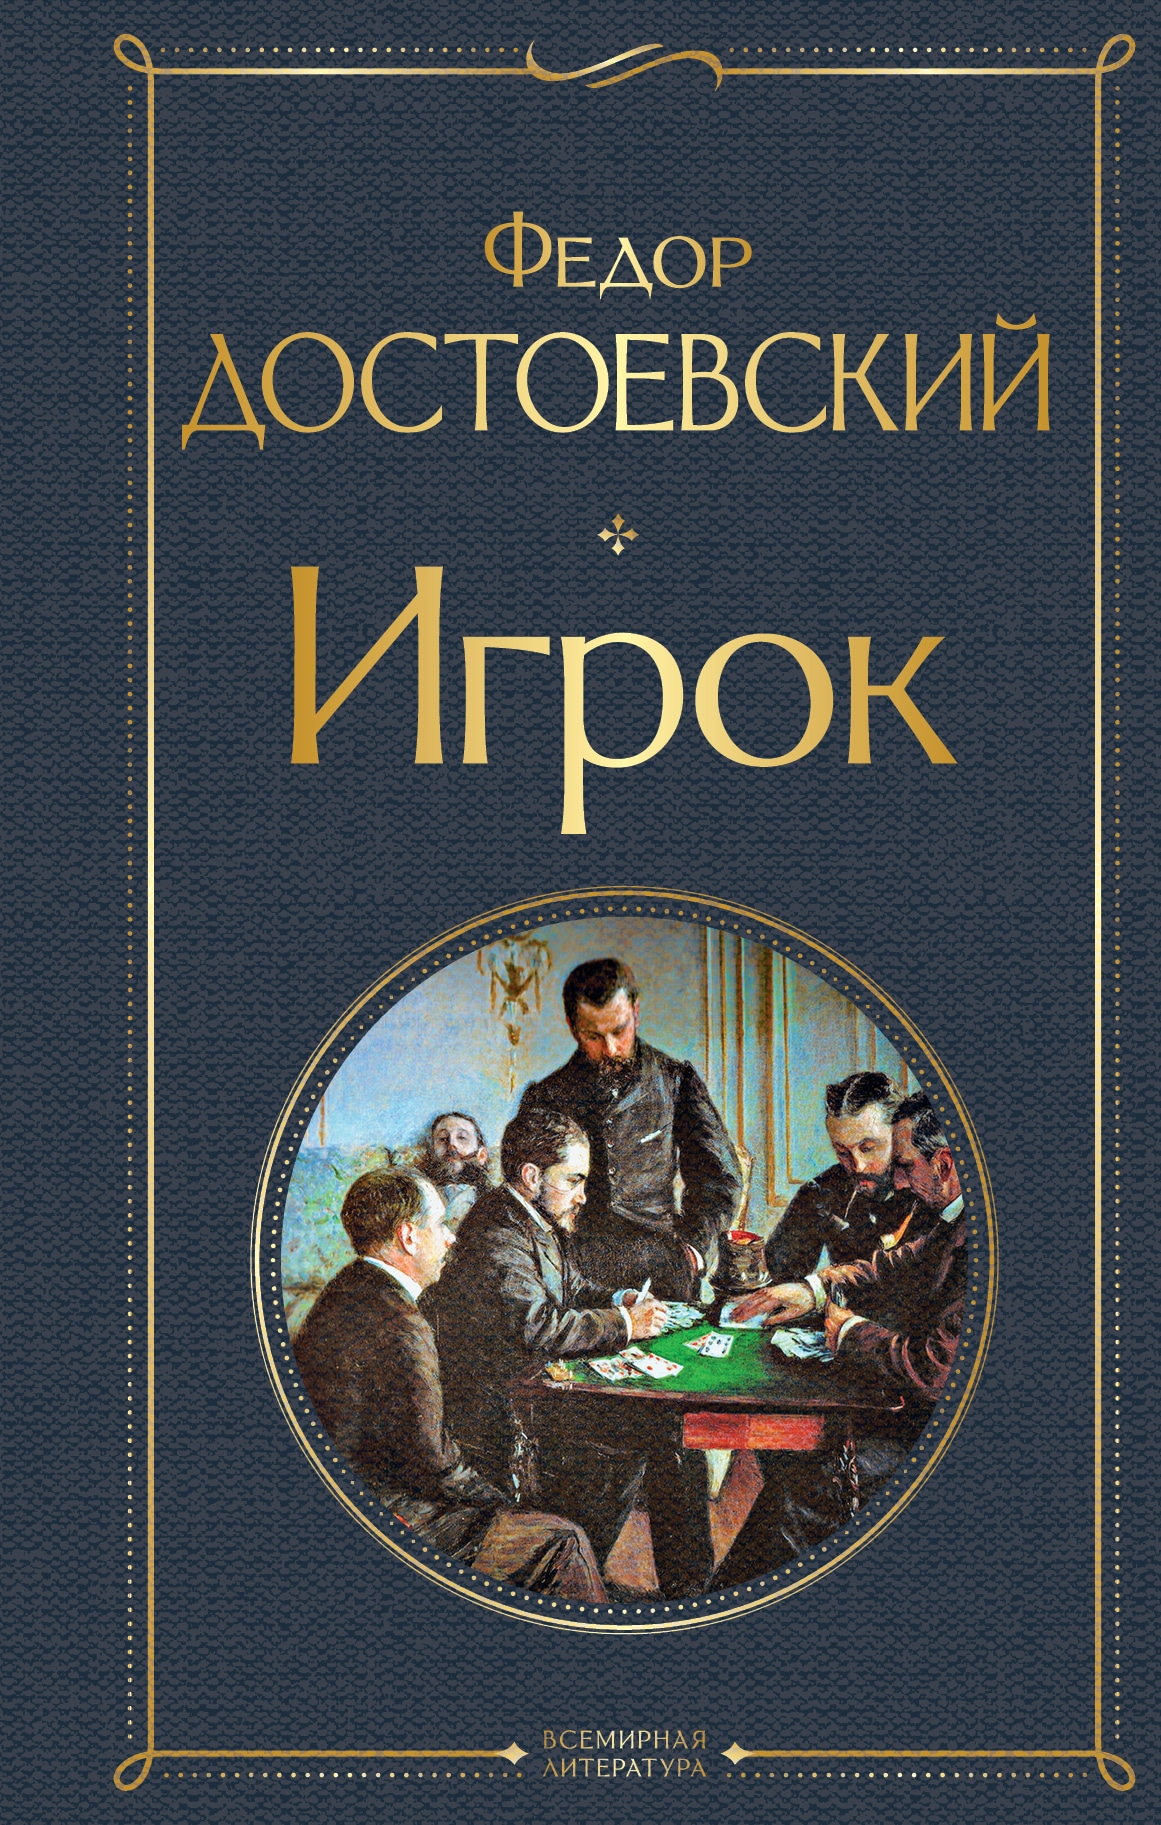 Книга «Игрок» Федор Достоевский — 29 июля 2021 г.